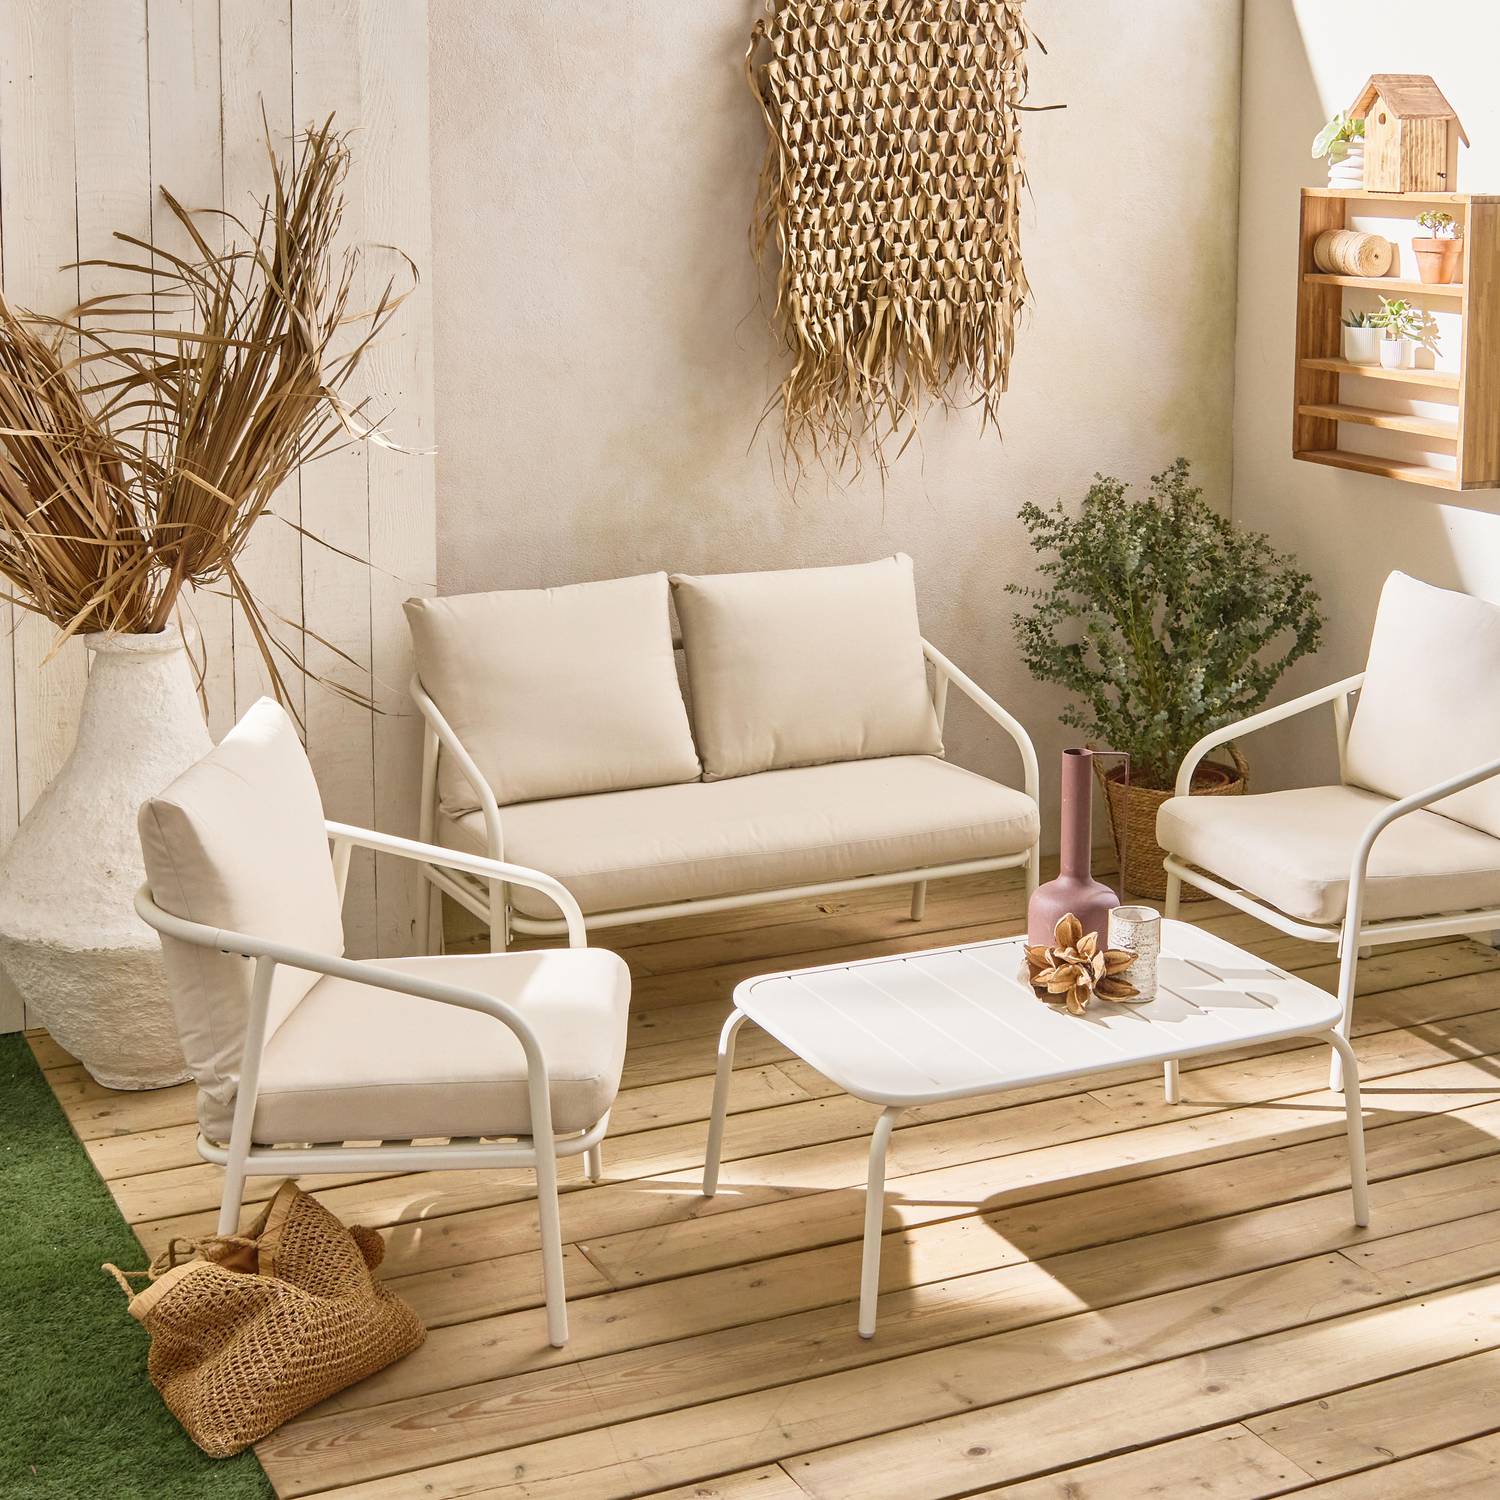 Salon de jardin en métal 4 places blanc, coussins beige, design épuré arrondi   Photo1